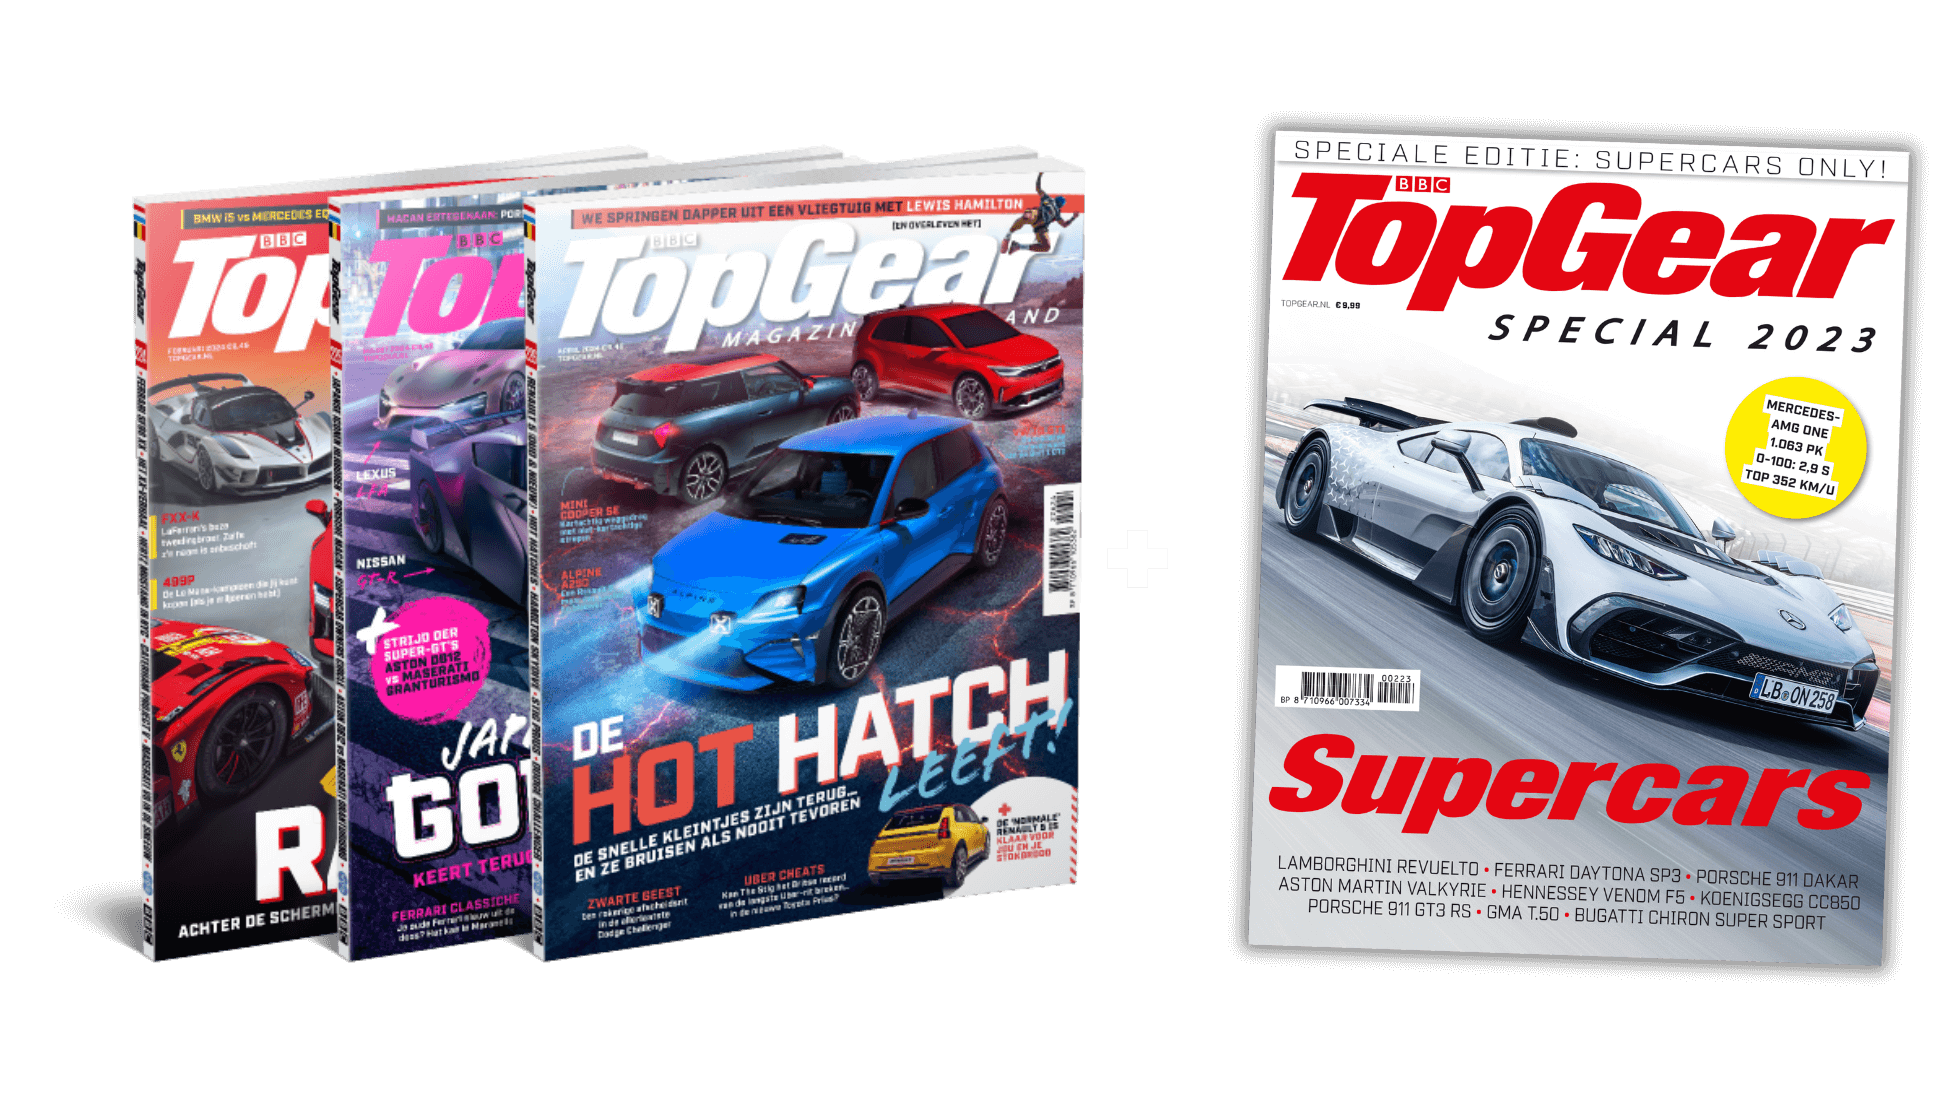 Halfjaar TopGear met gratis TopGear Supercars 2023 (226)